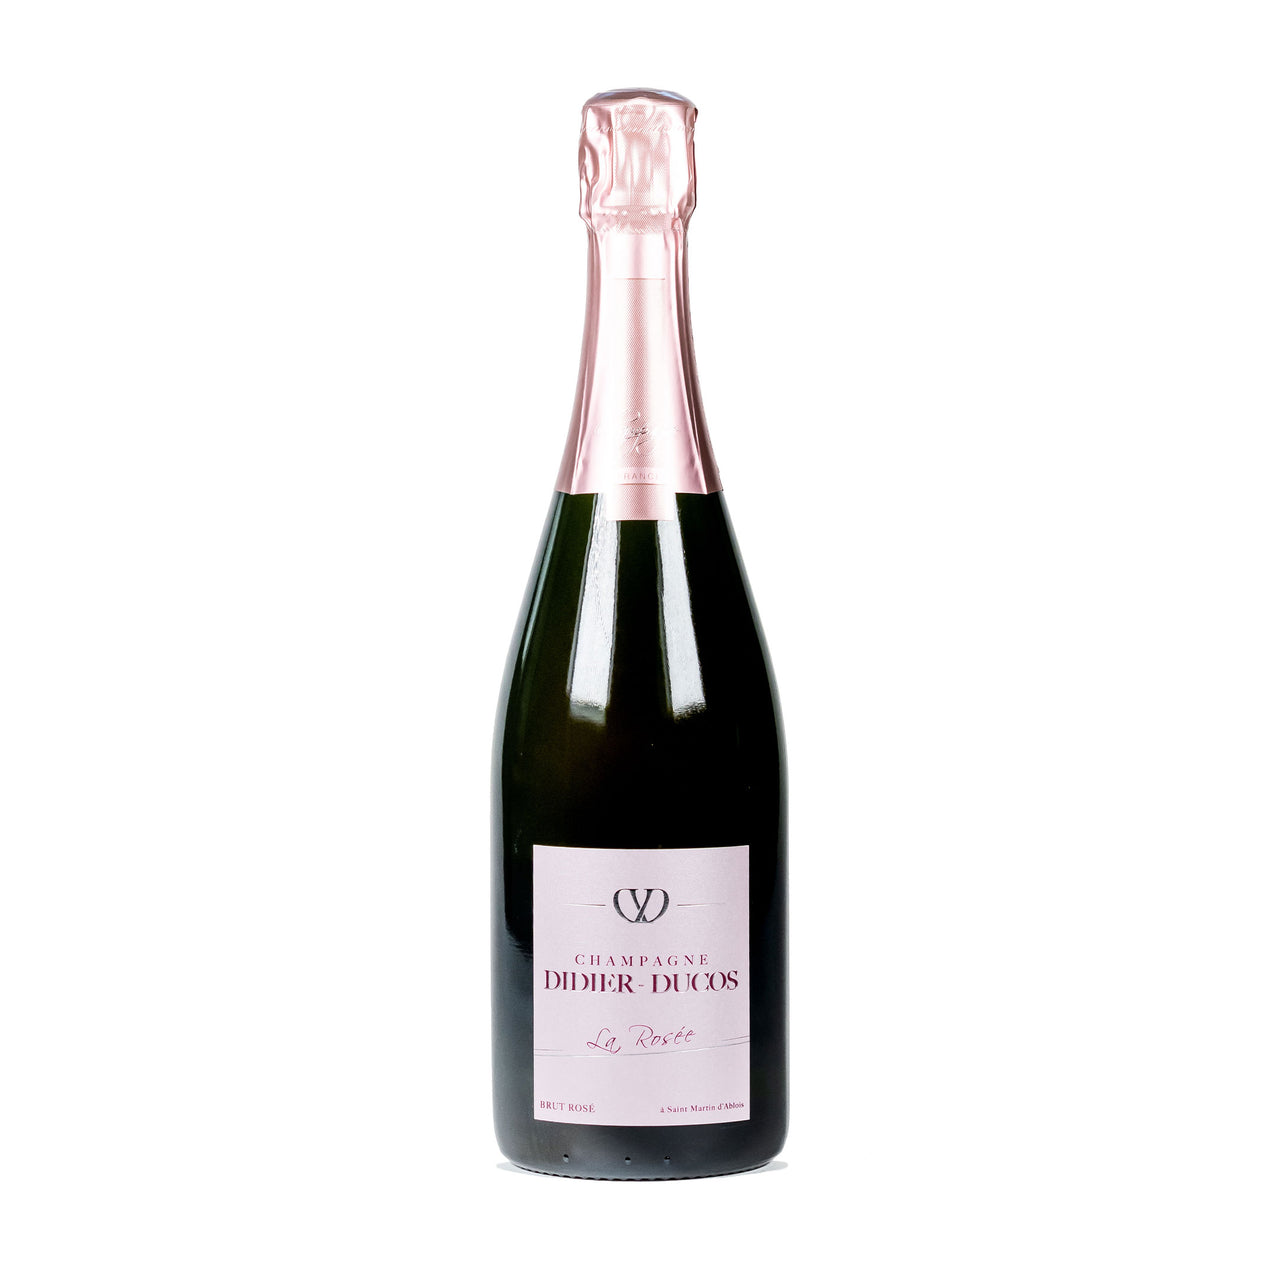 La Rosée Didier-Ducos Champagne